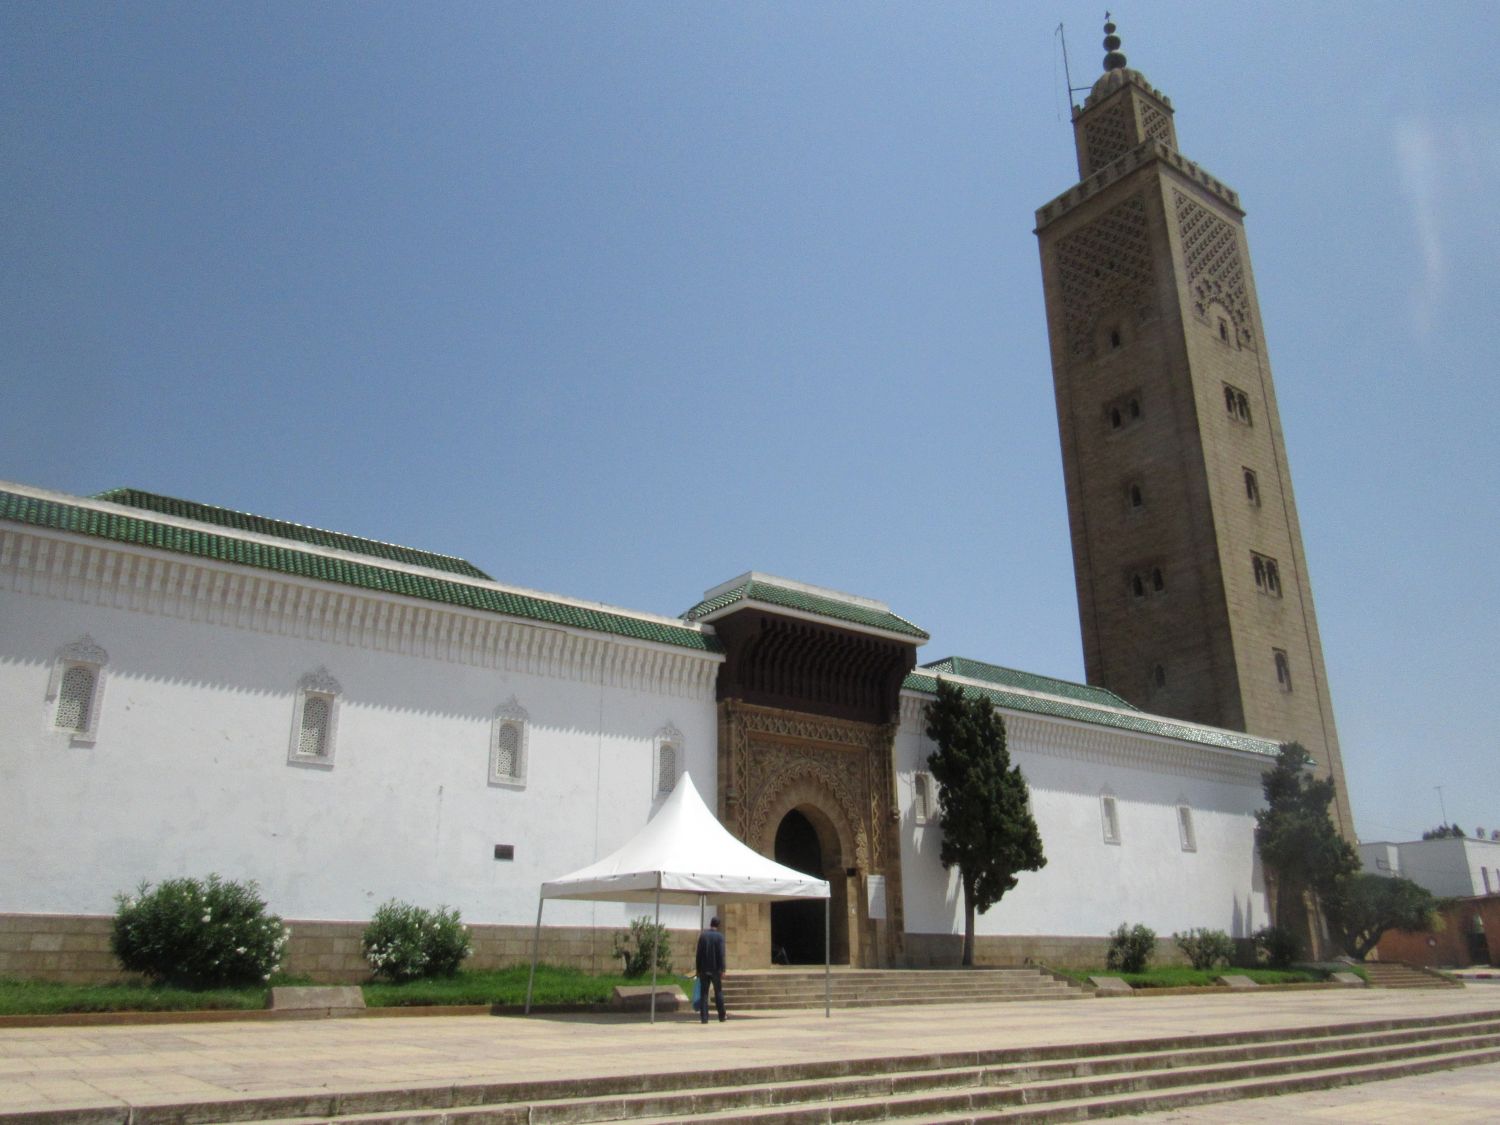 Exterior view, moque exterior, entranceway and minaret.